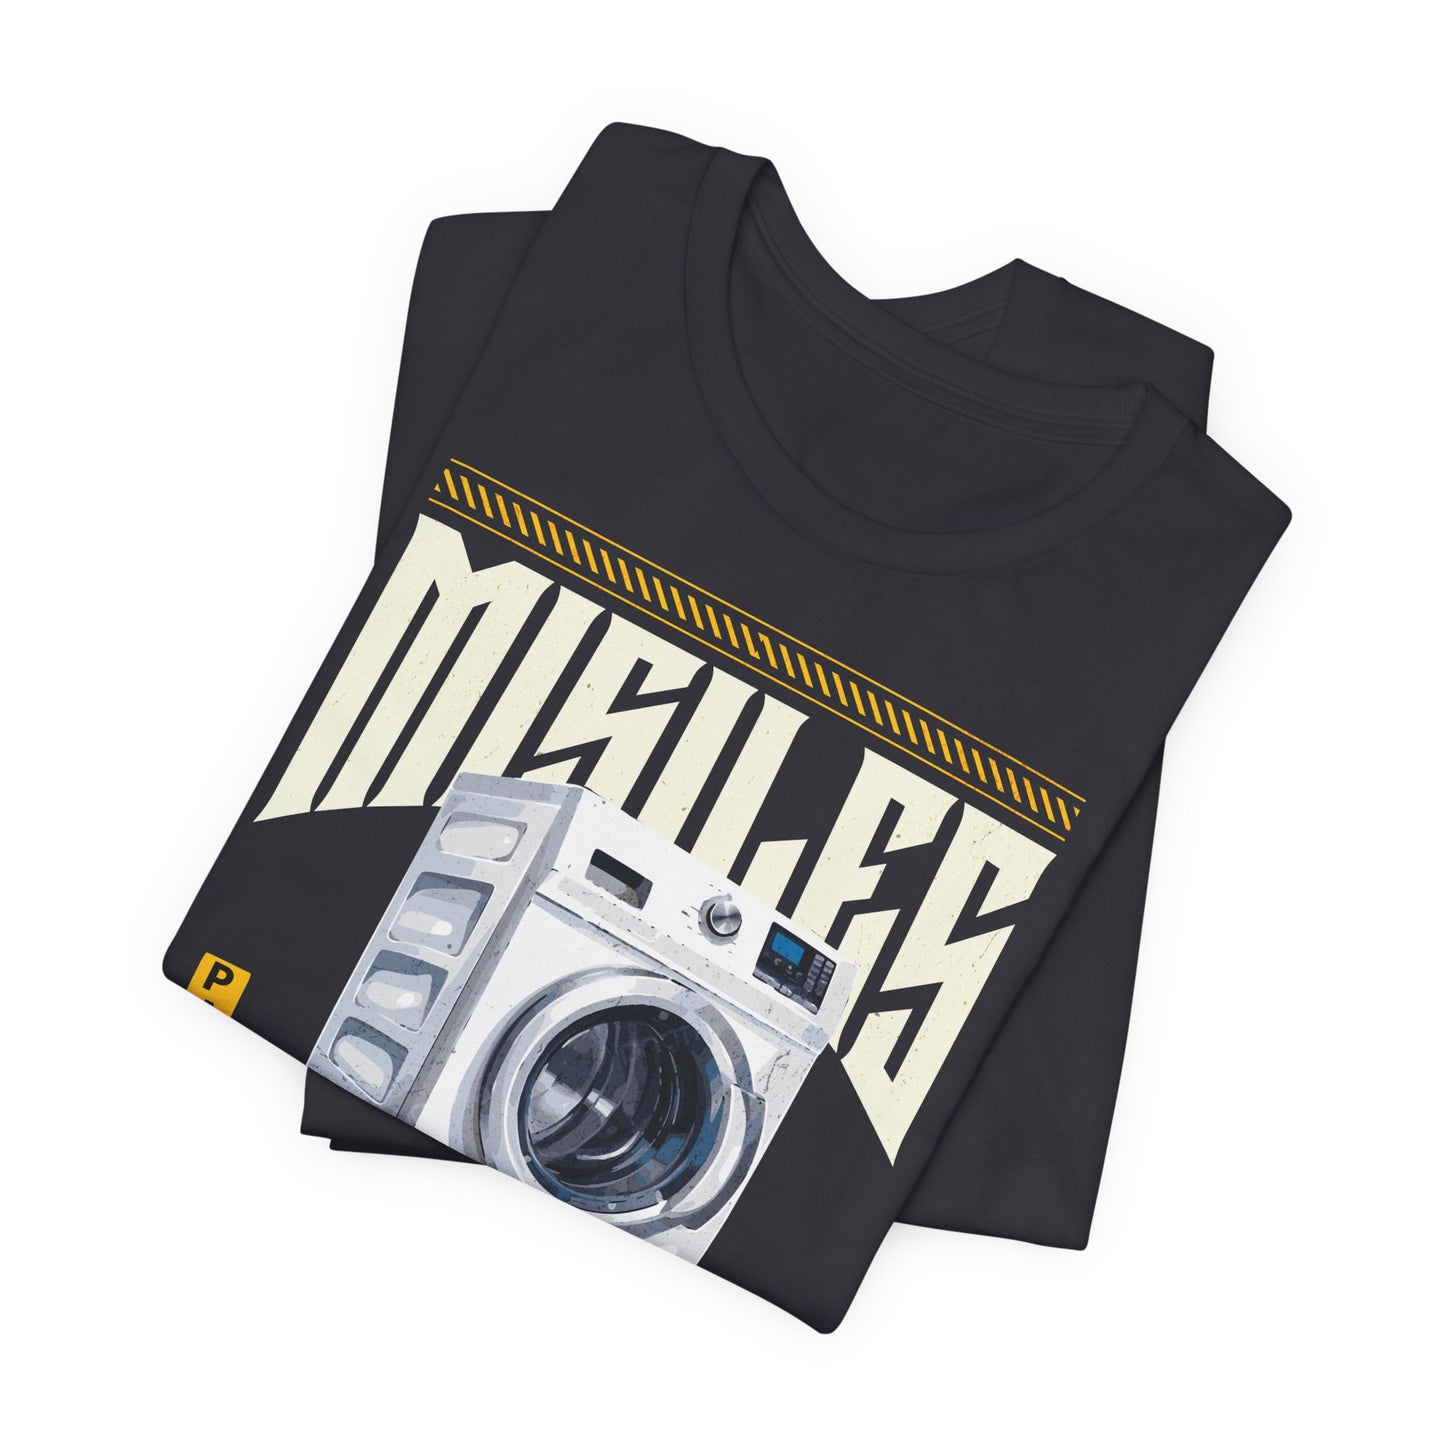 Misiles lavadoras, Camiseta de manga corta de punto unisex